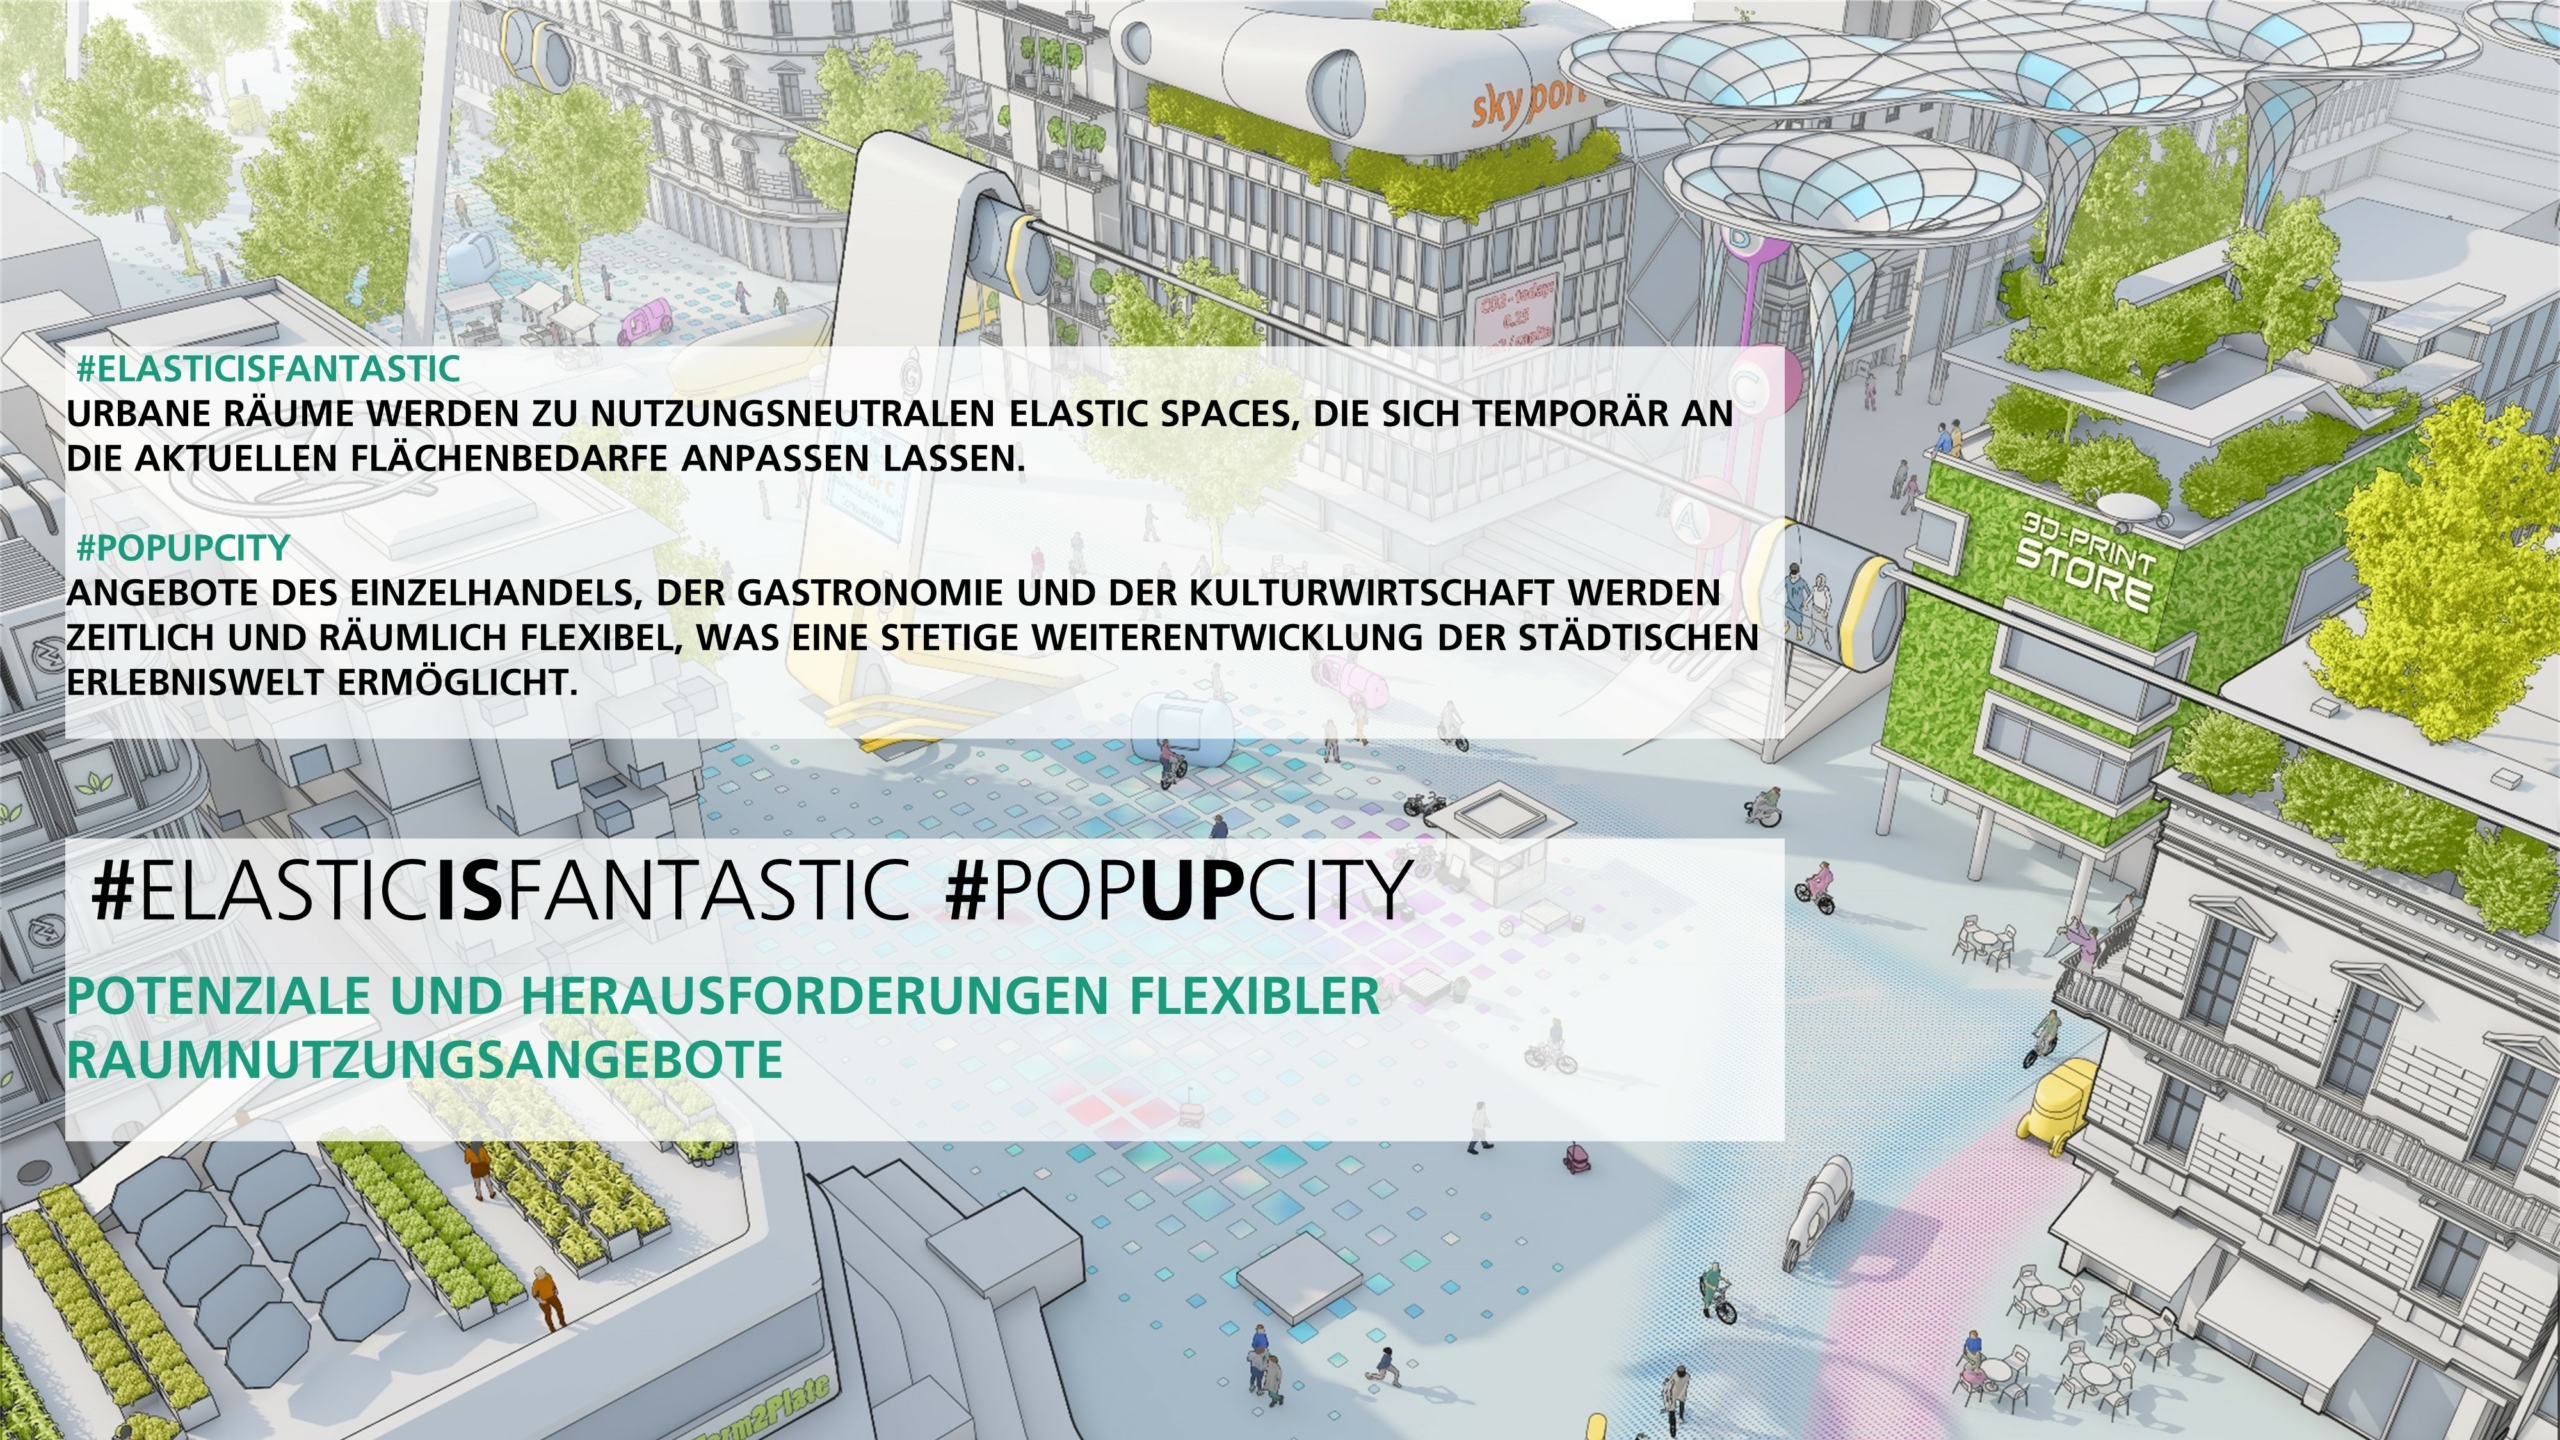 Elastic is Fantastic und Pop Up City – Potenziale und Herausforderungen flexibler Raumnutzungsangebote